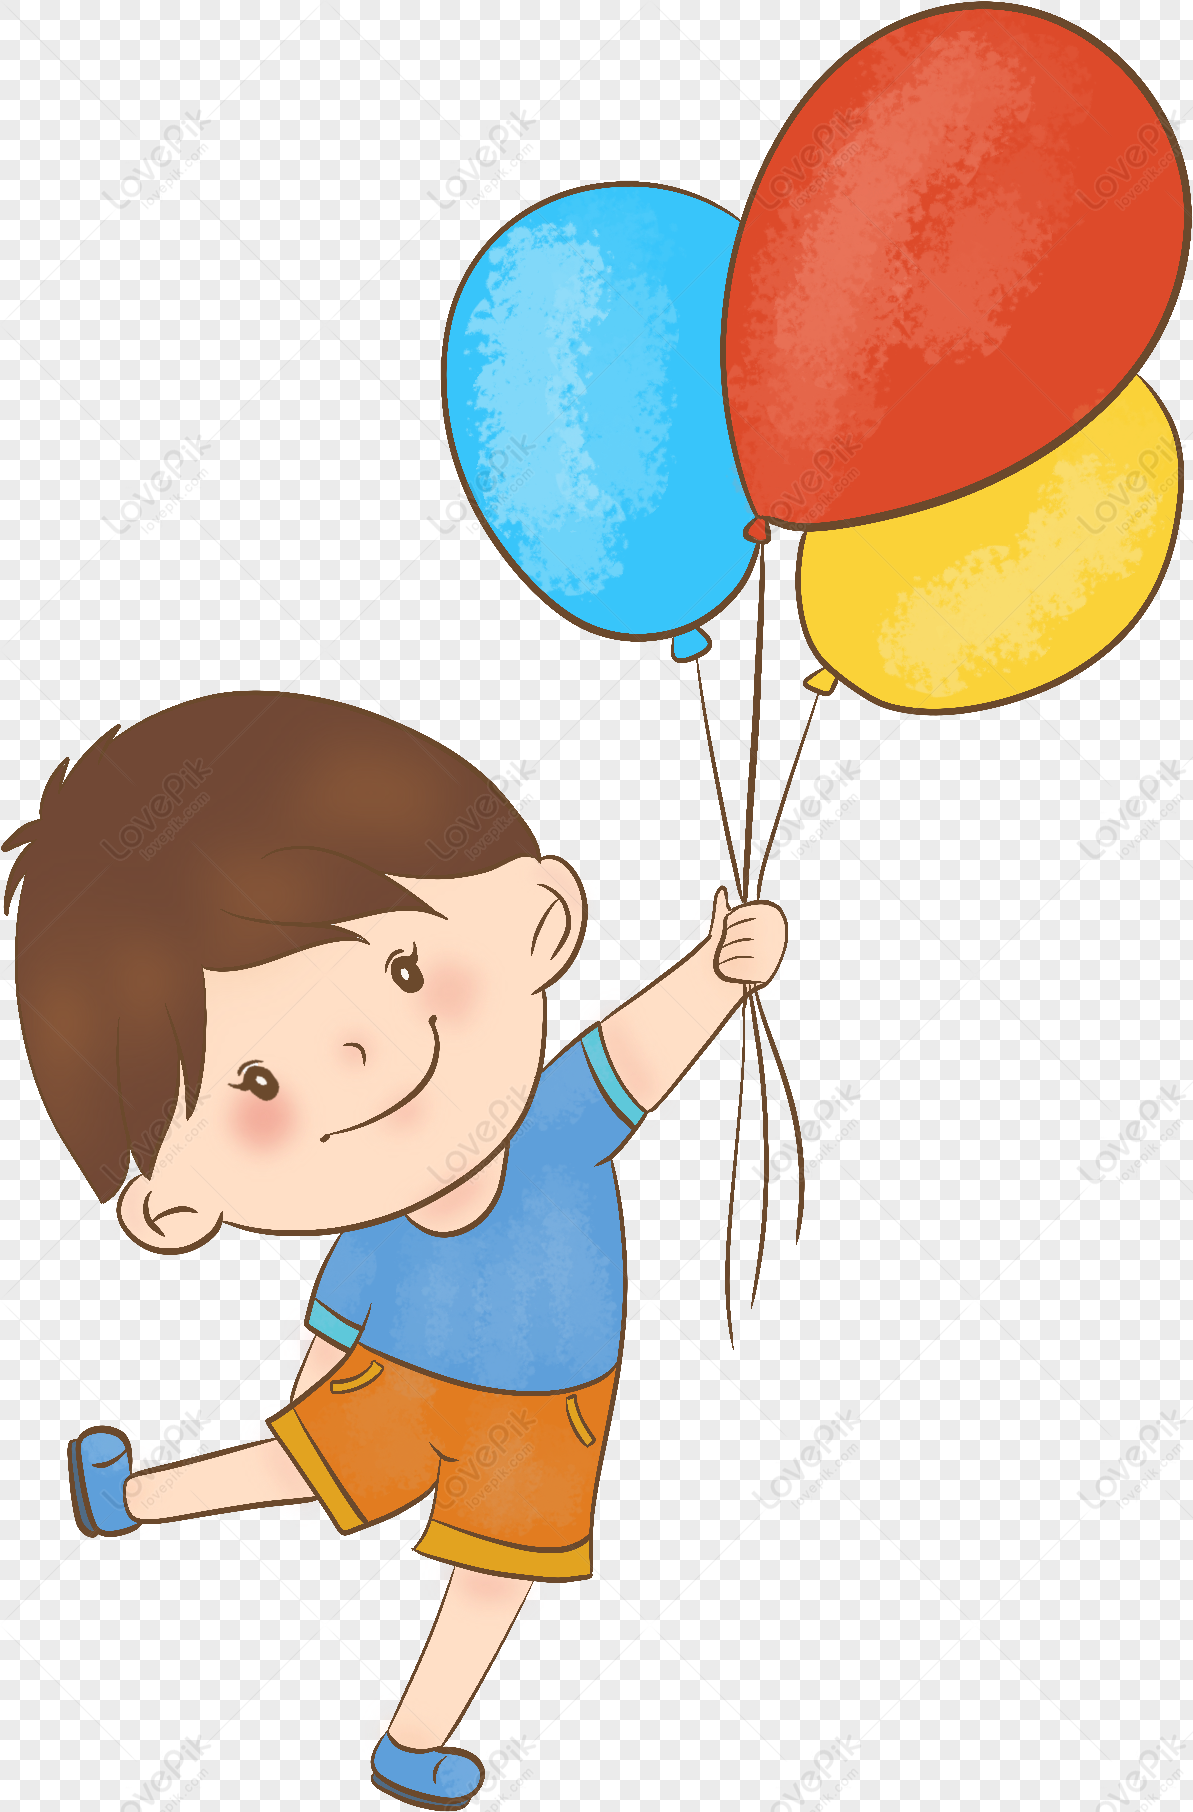 personagem de desenho animado de lobo fofo voar com balão de ar no